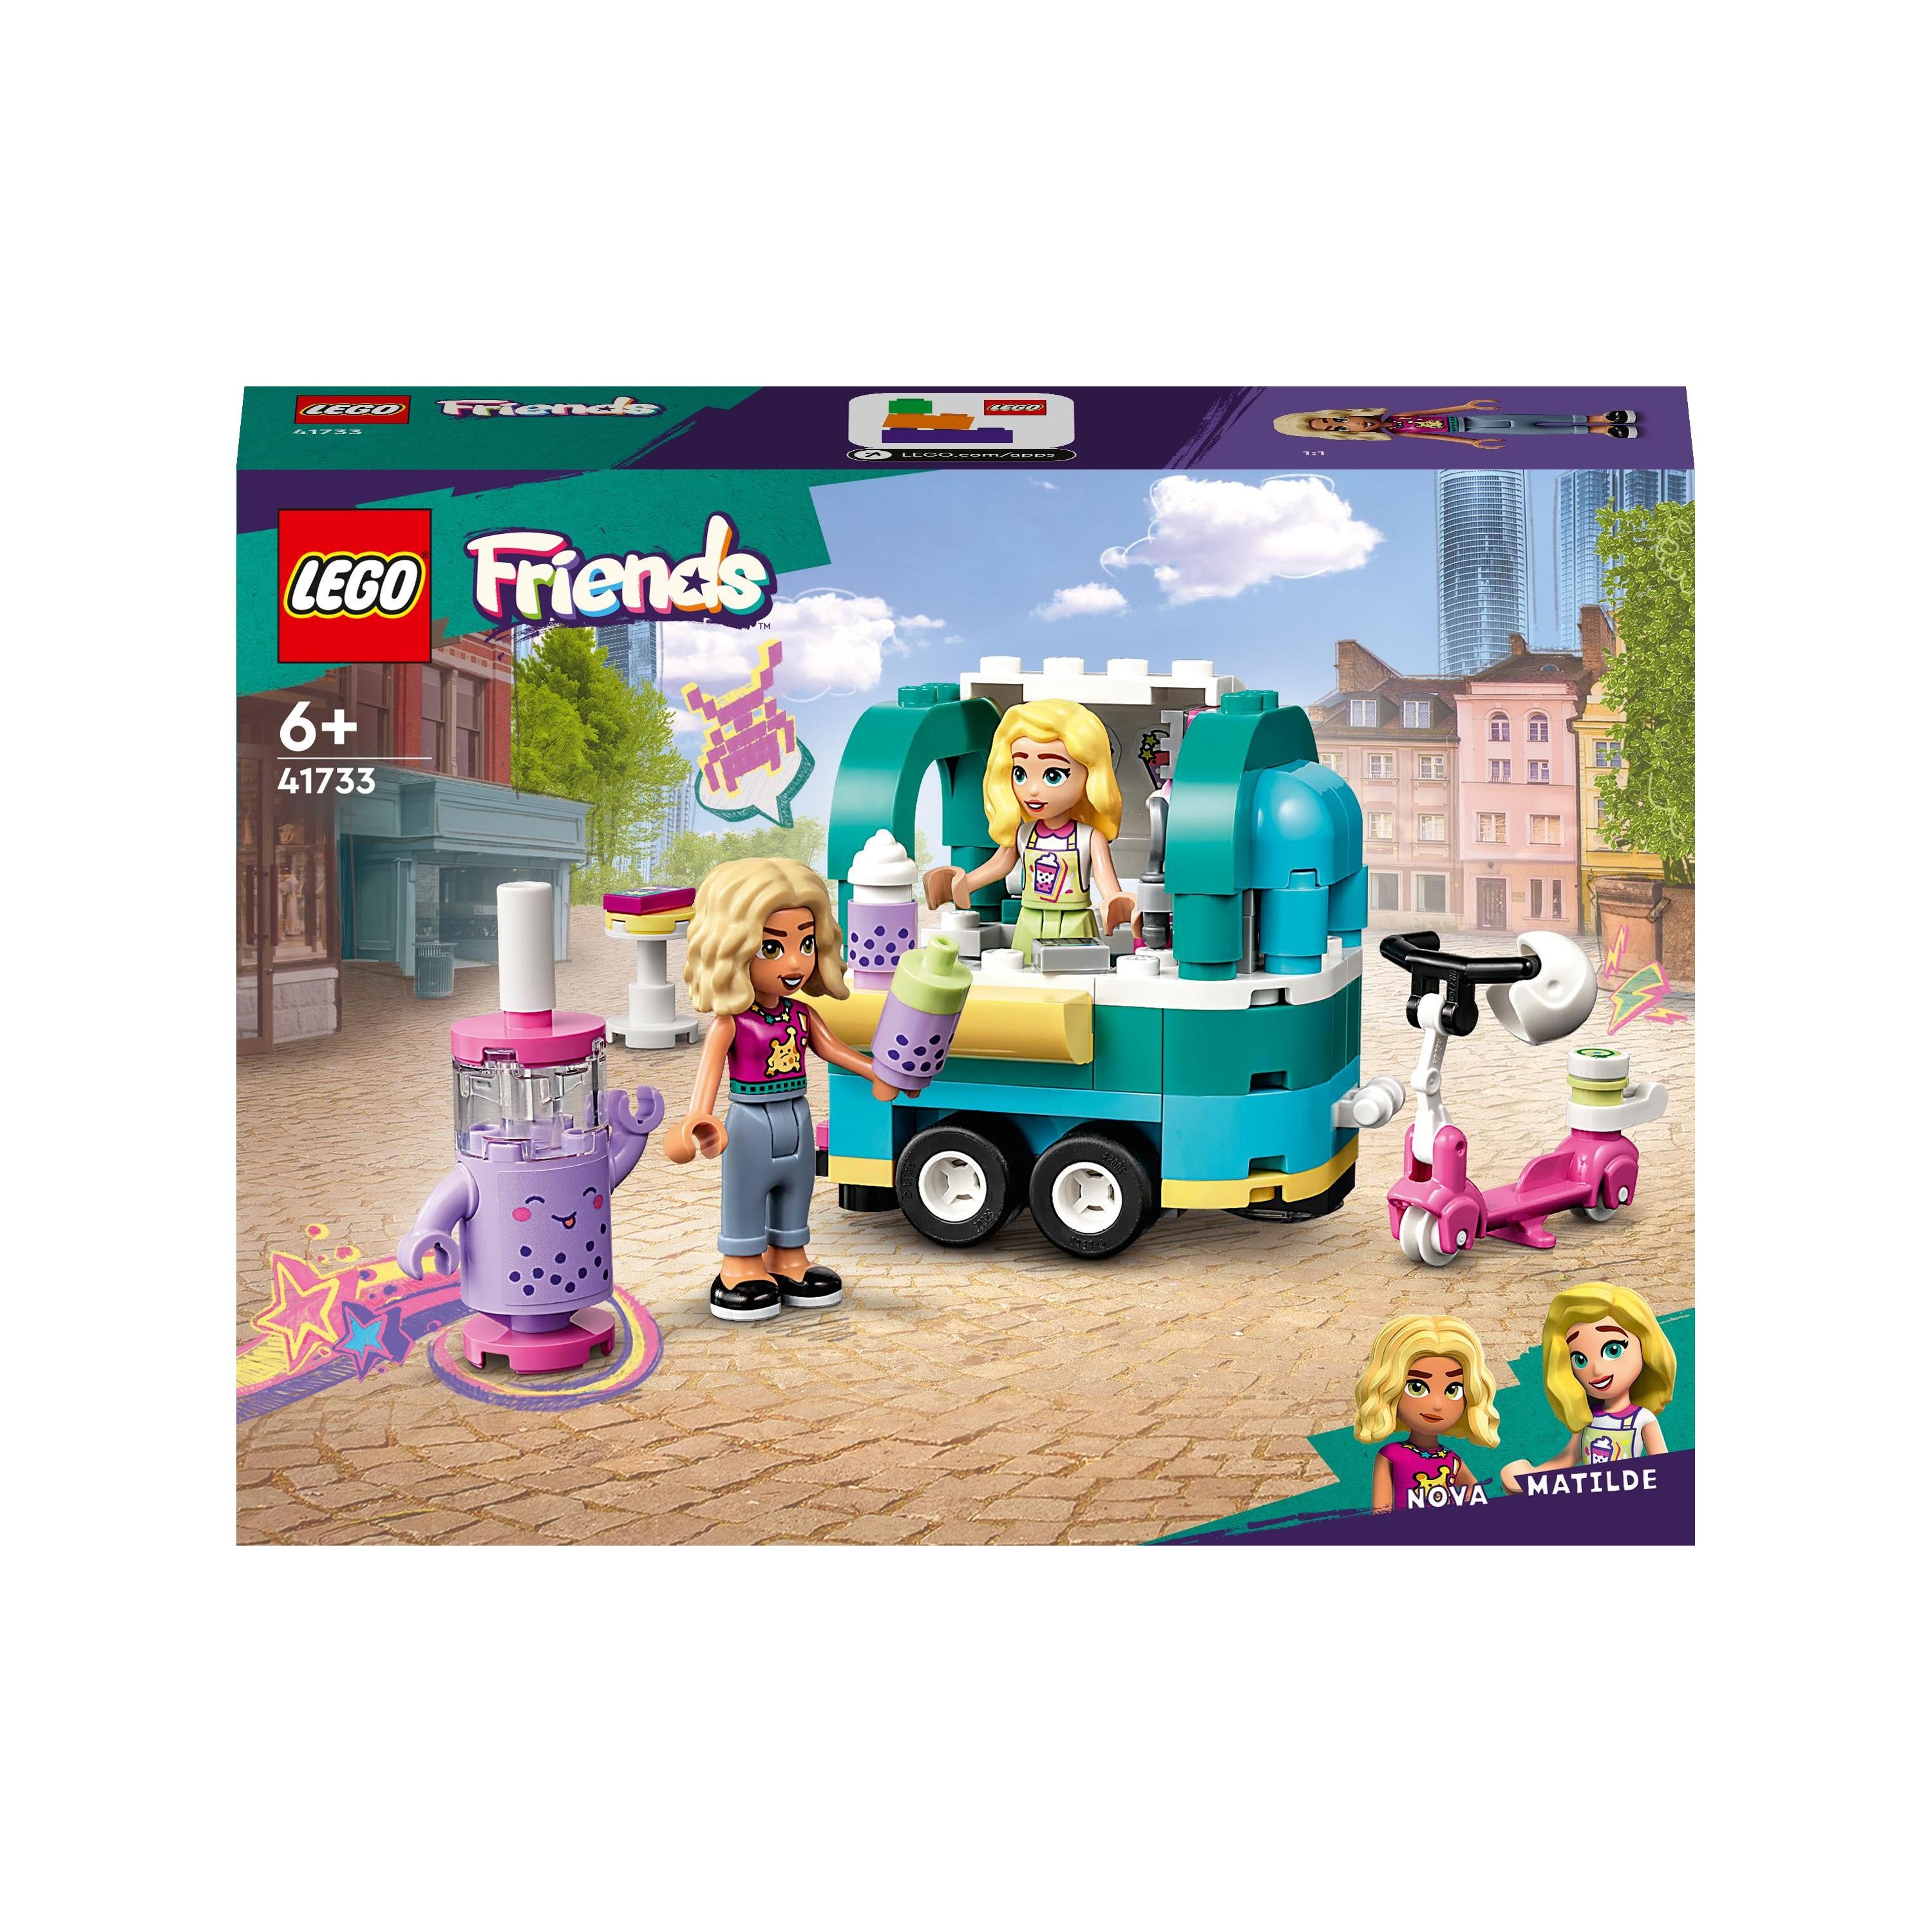 LEGO® Friends Heartlake City Mobile Bubble Tea Shop | 41733